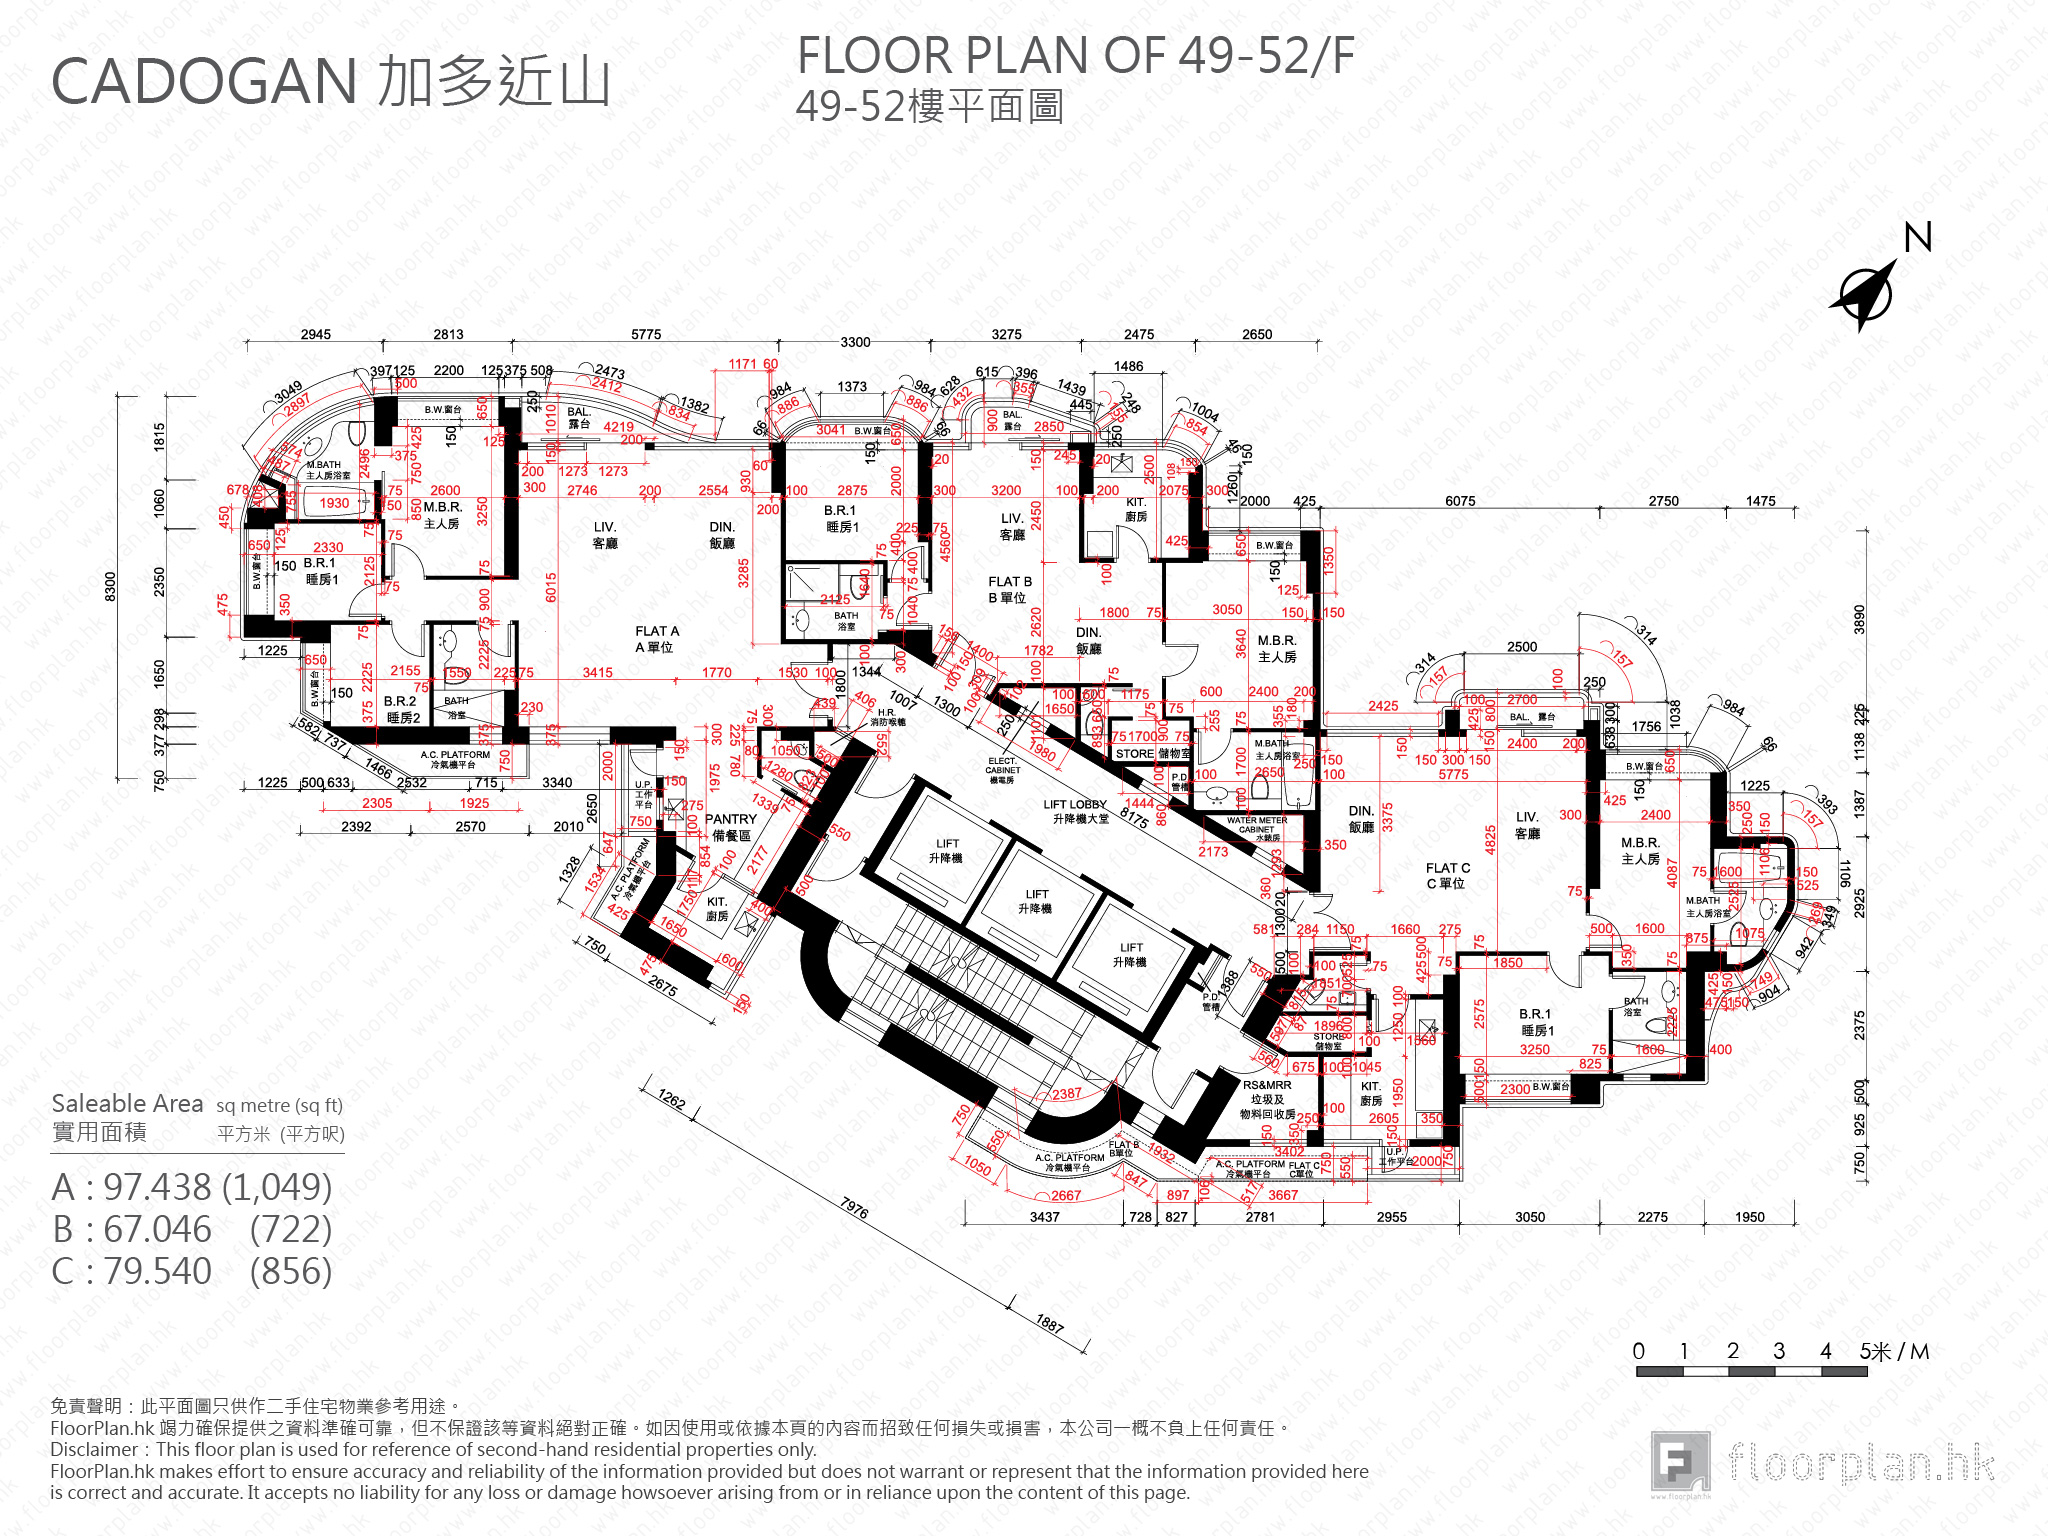 加多近山 平面圖 FloorPlan.hk